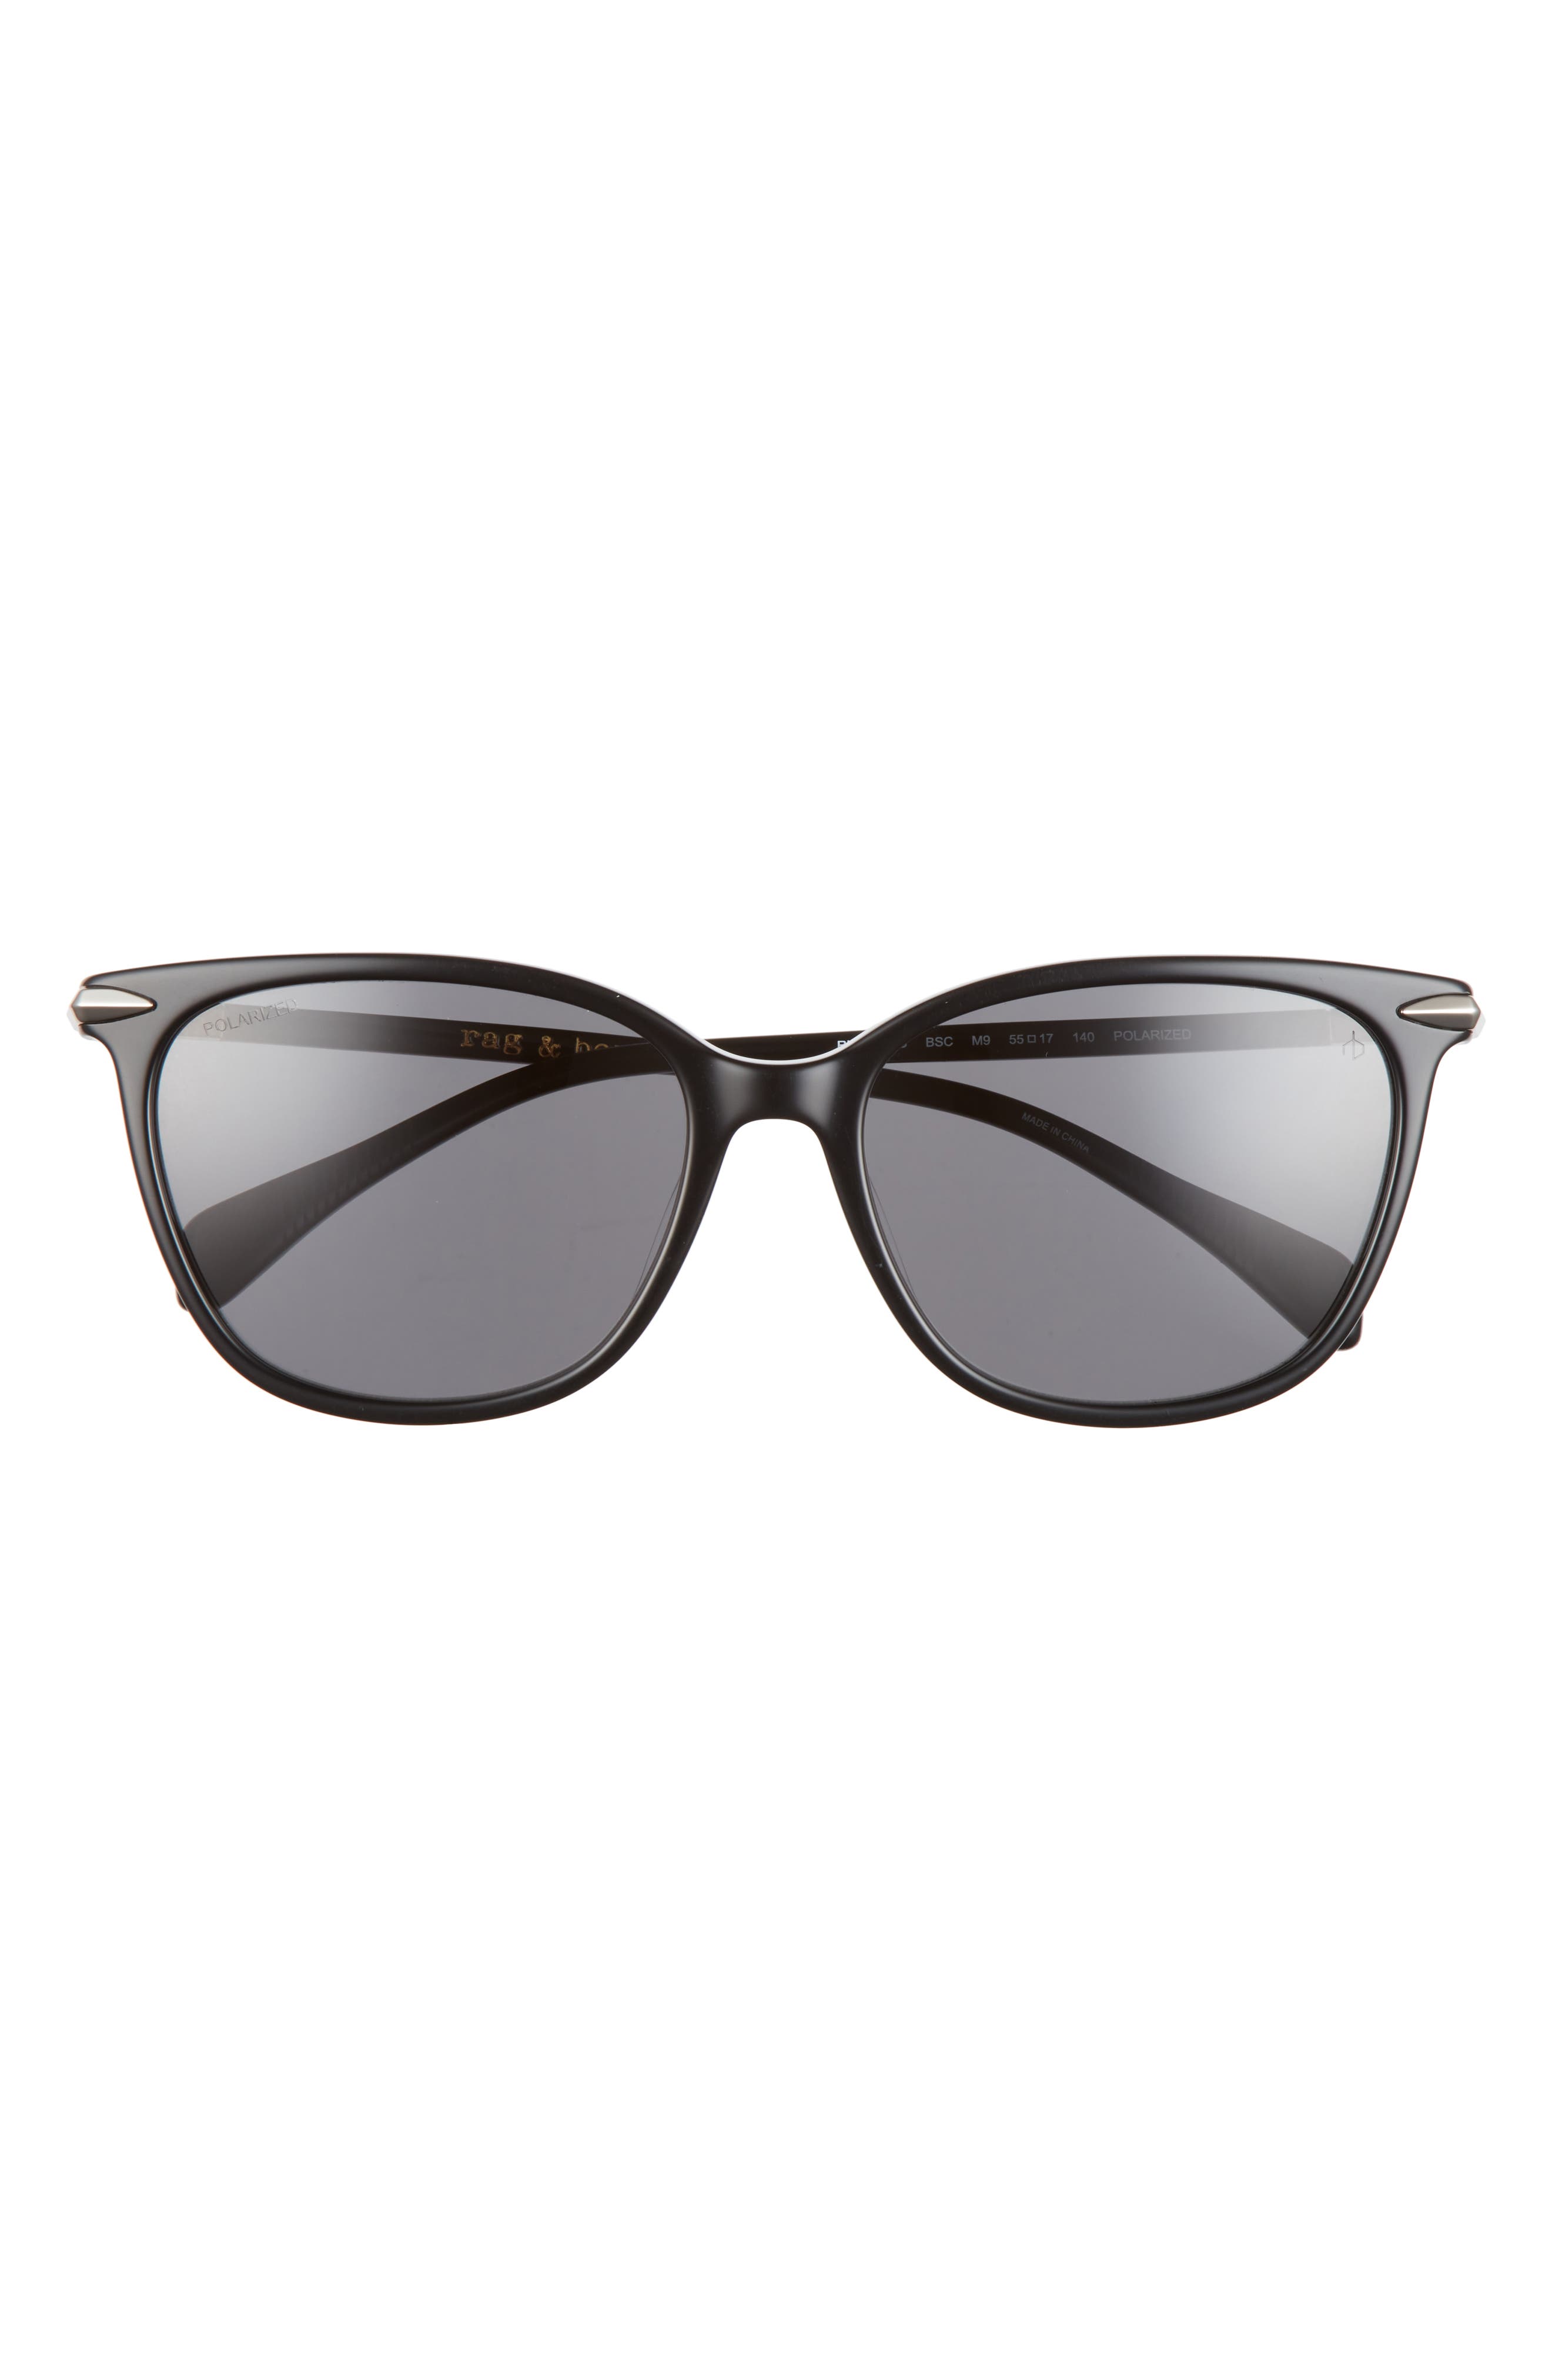 Rag  bone Sunglasses for Women | Nordstrom